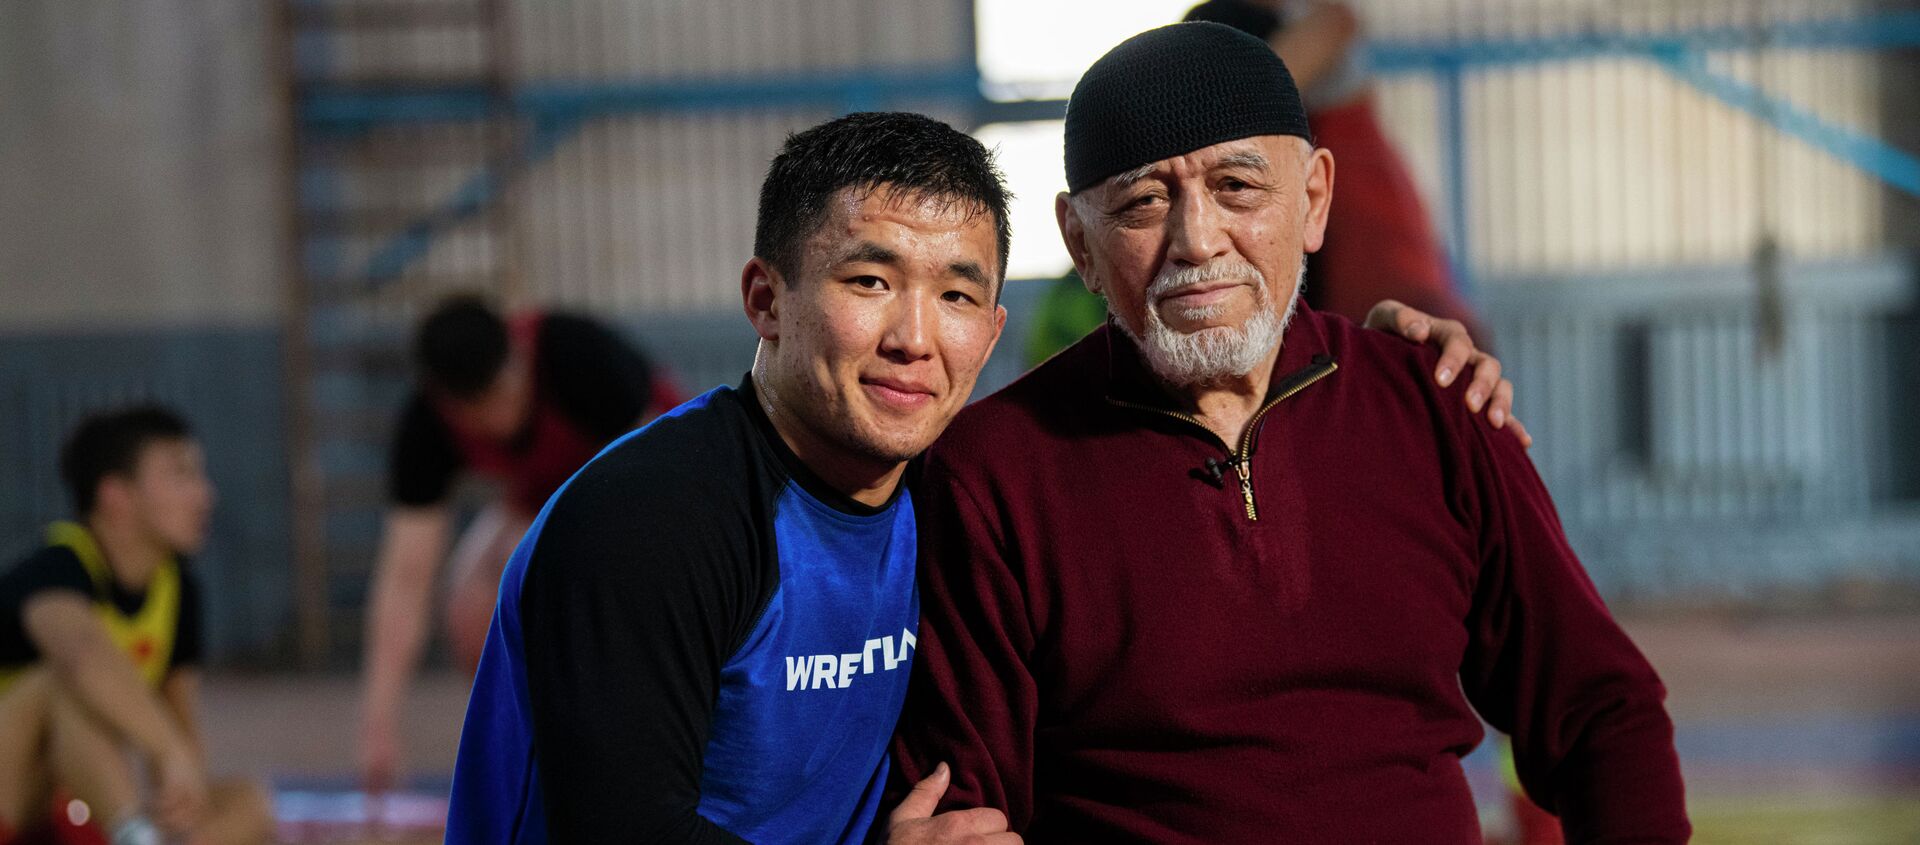 Тренирует чемпионов в 84 года — видео про легенду кыргызского спорта - Sputnik Кыргызстан, 1920, 03.12.2021